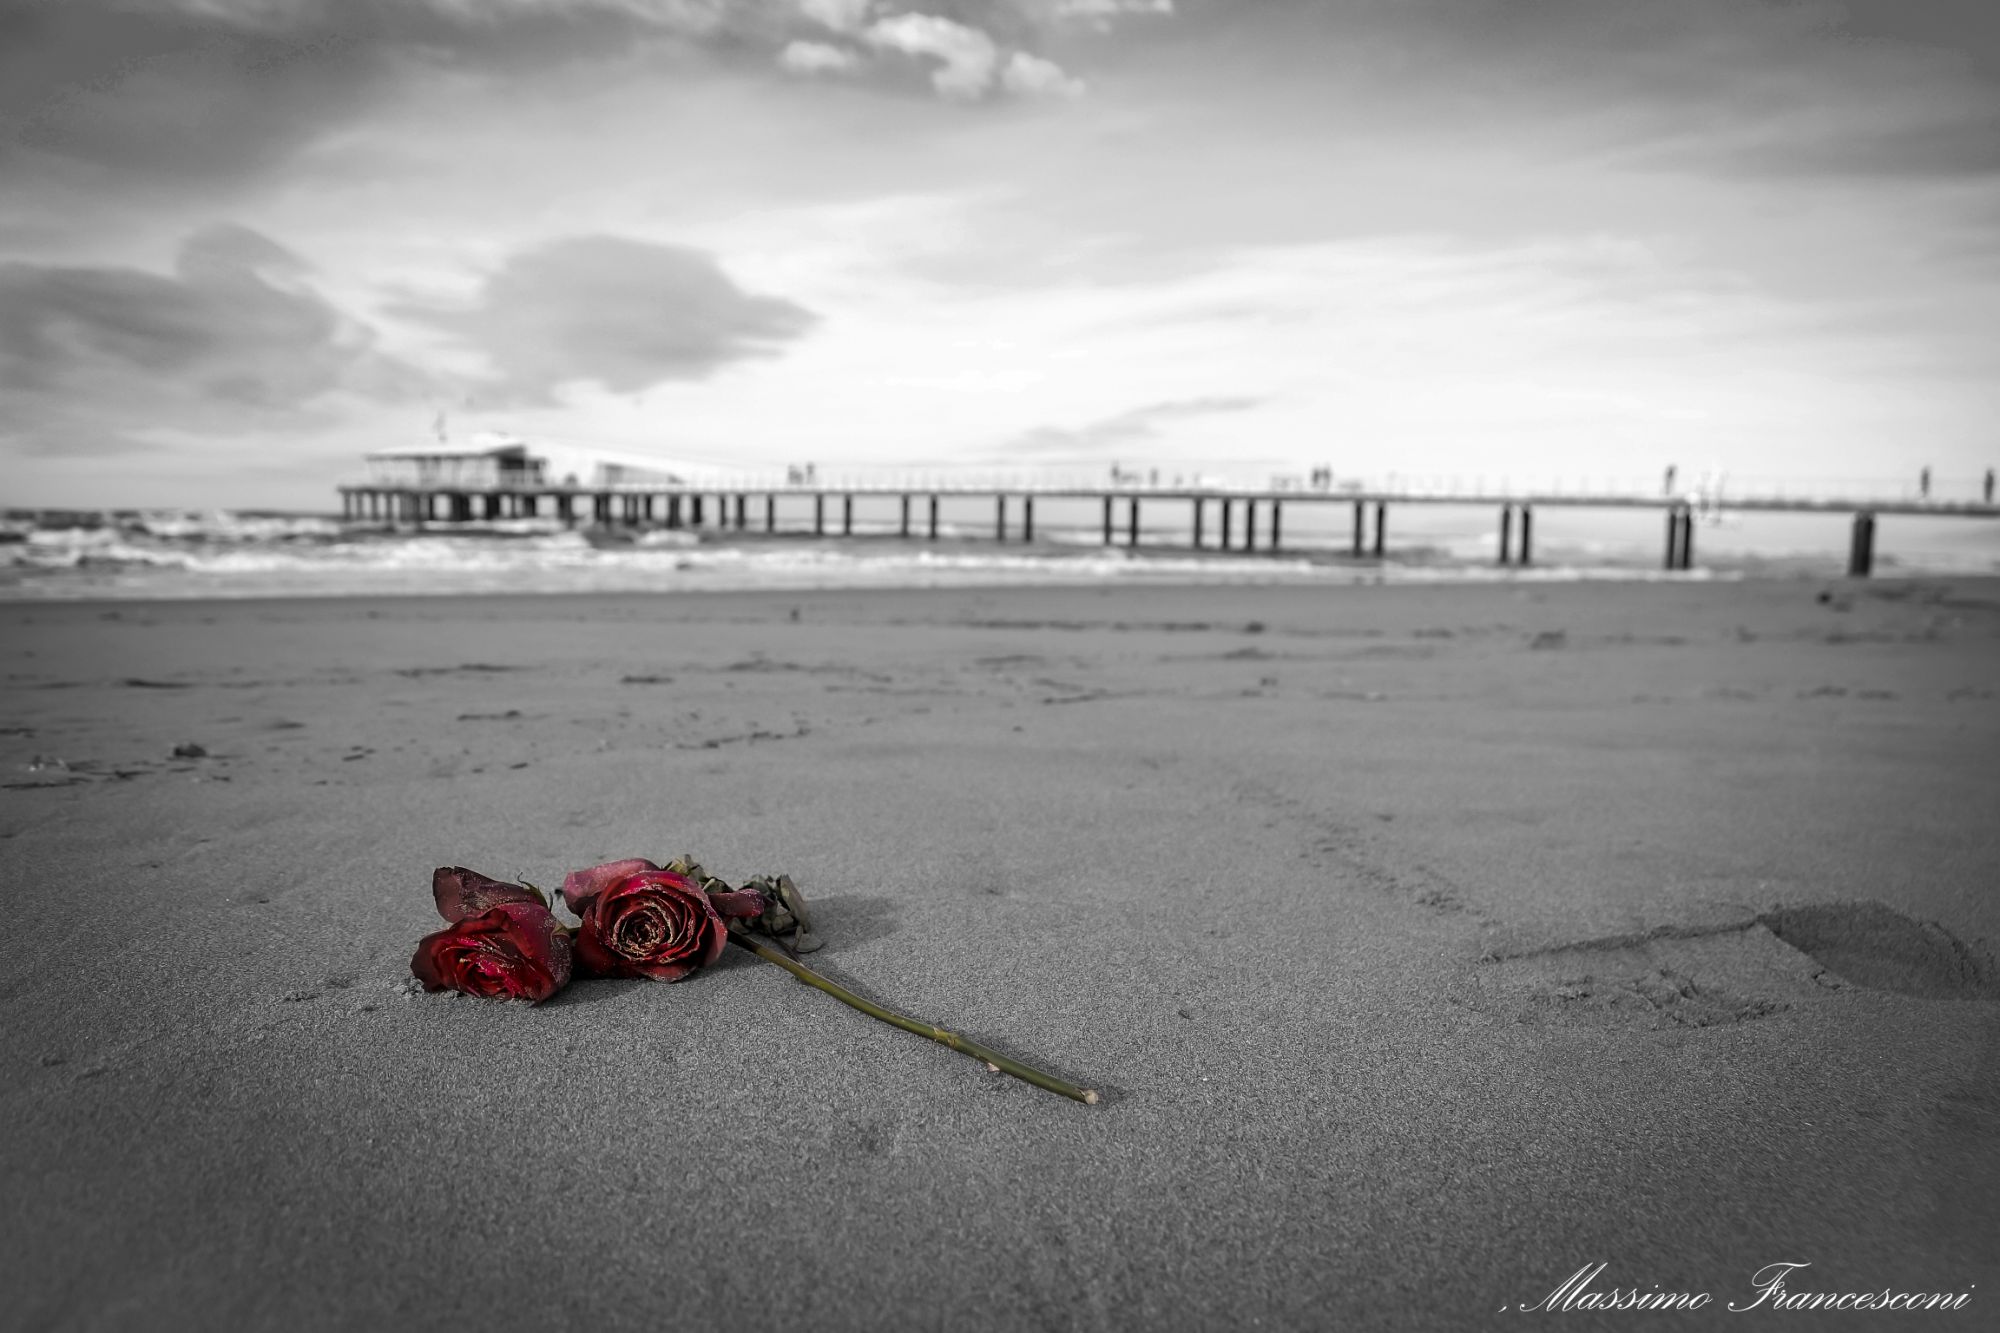 La rosa sulla sabbia